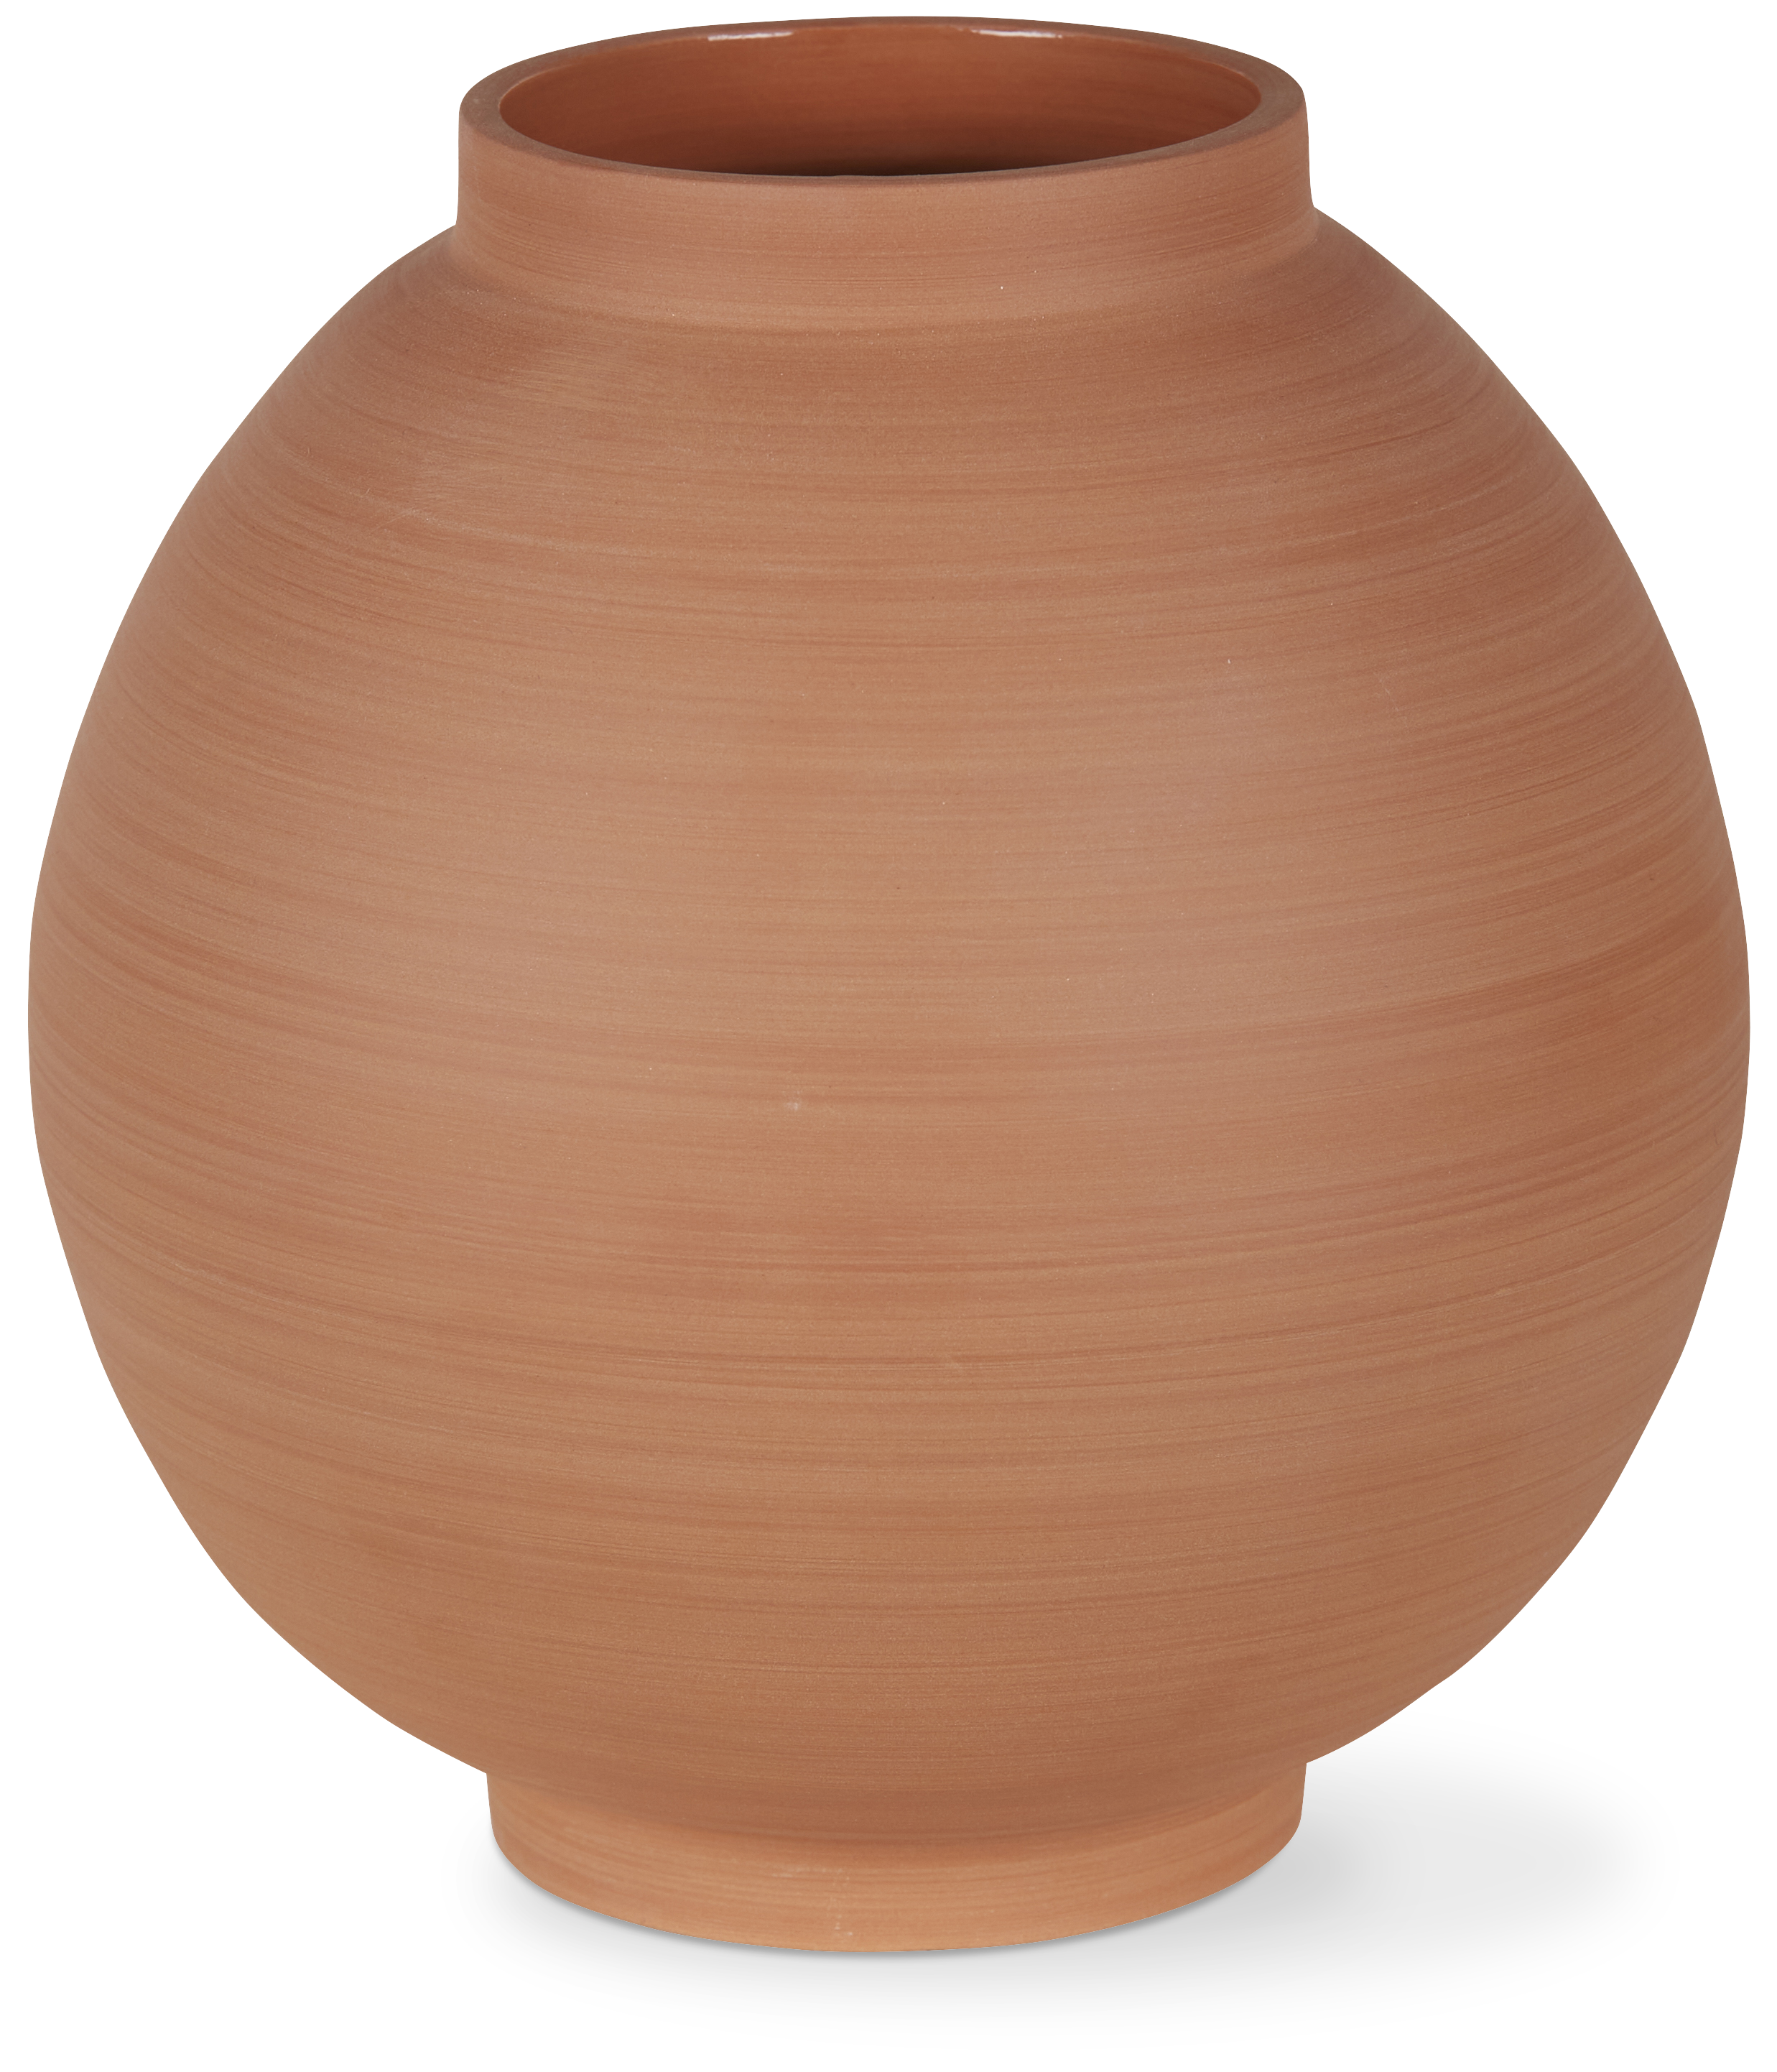 Clay ball vase